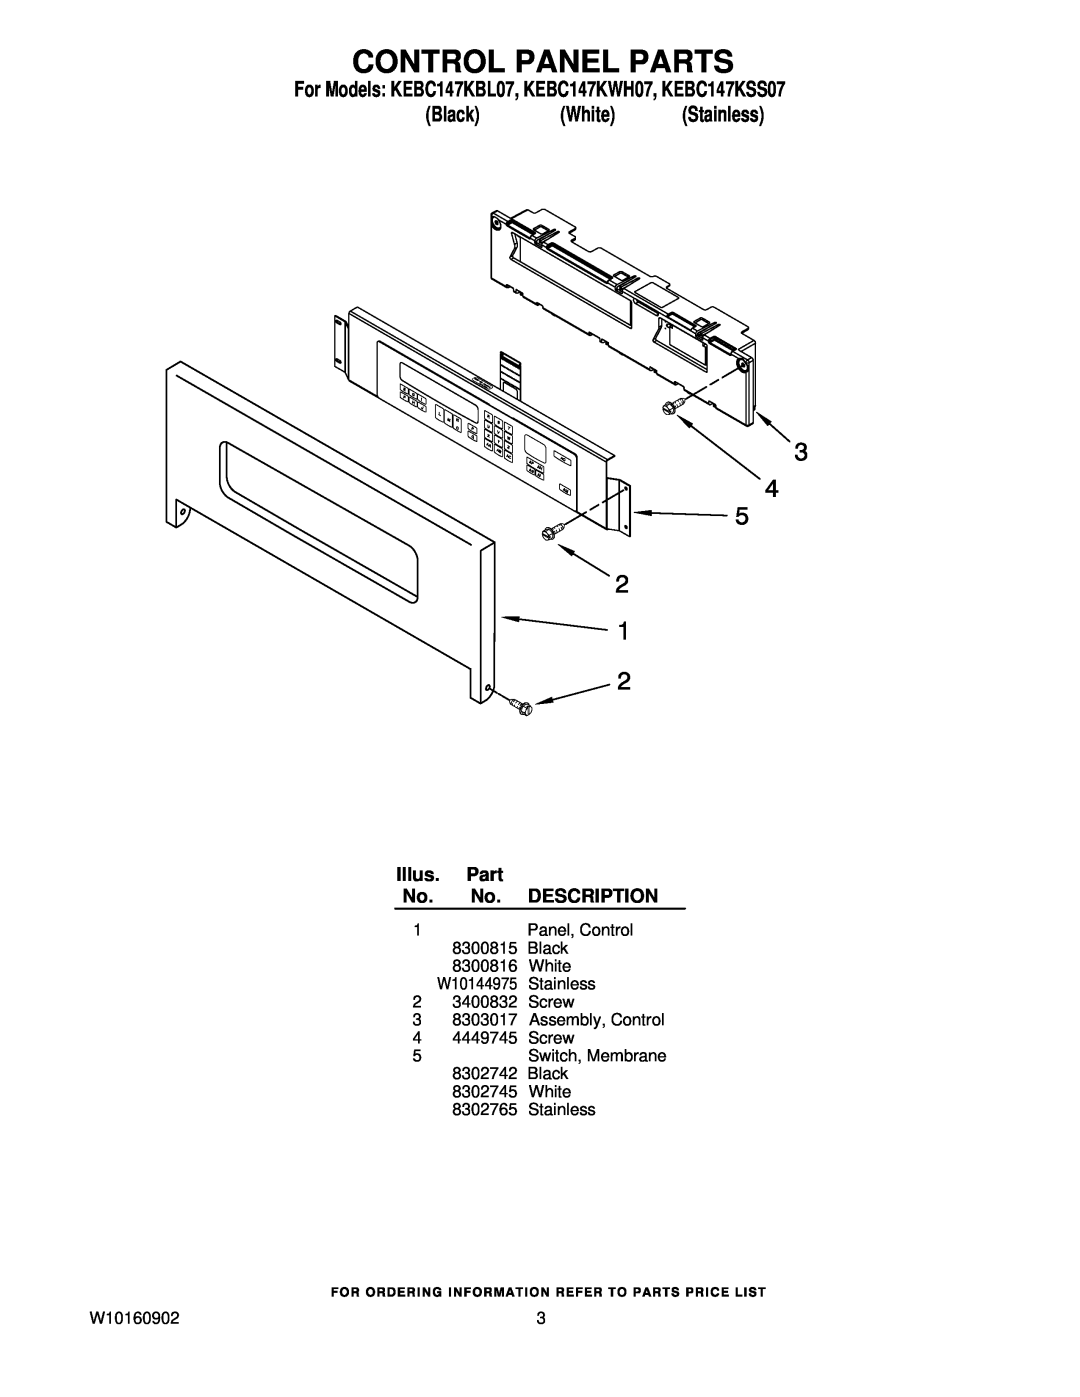 KitchenAid manual Control Panel Parts, For Models KEBC147KBL07, KEBC147KWH07, KEBC147KSS07, Black White Stainless 